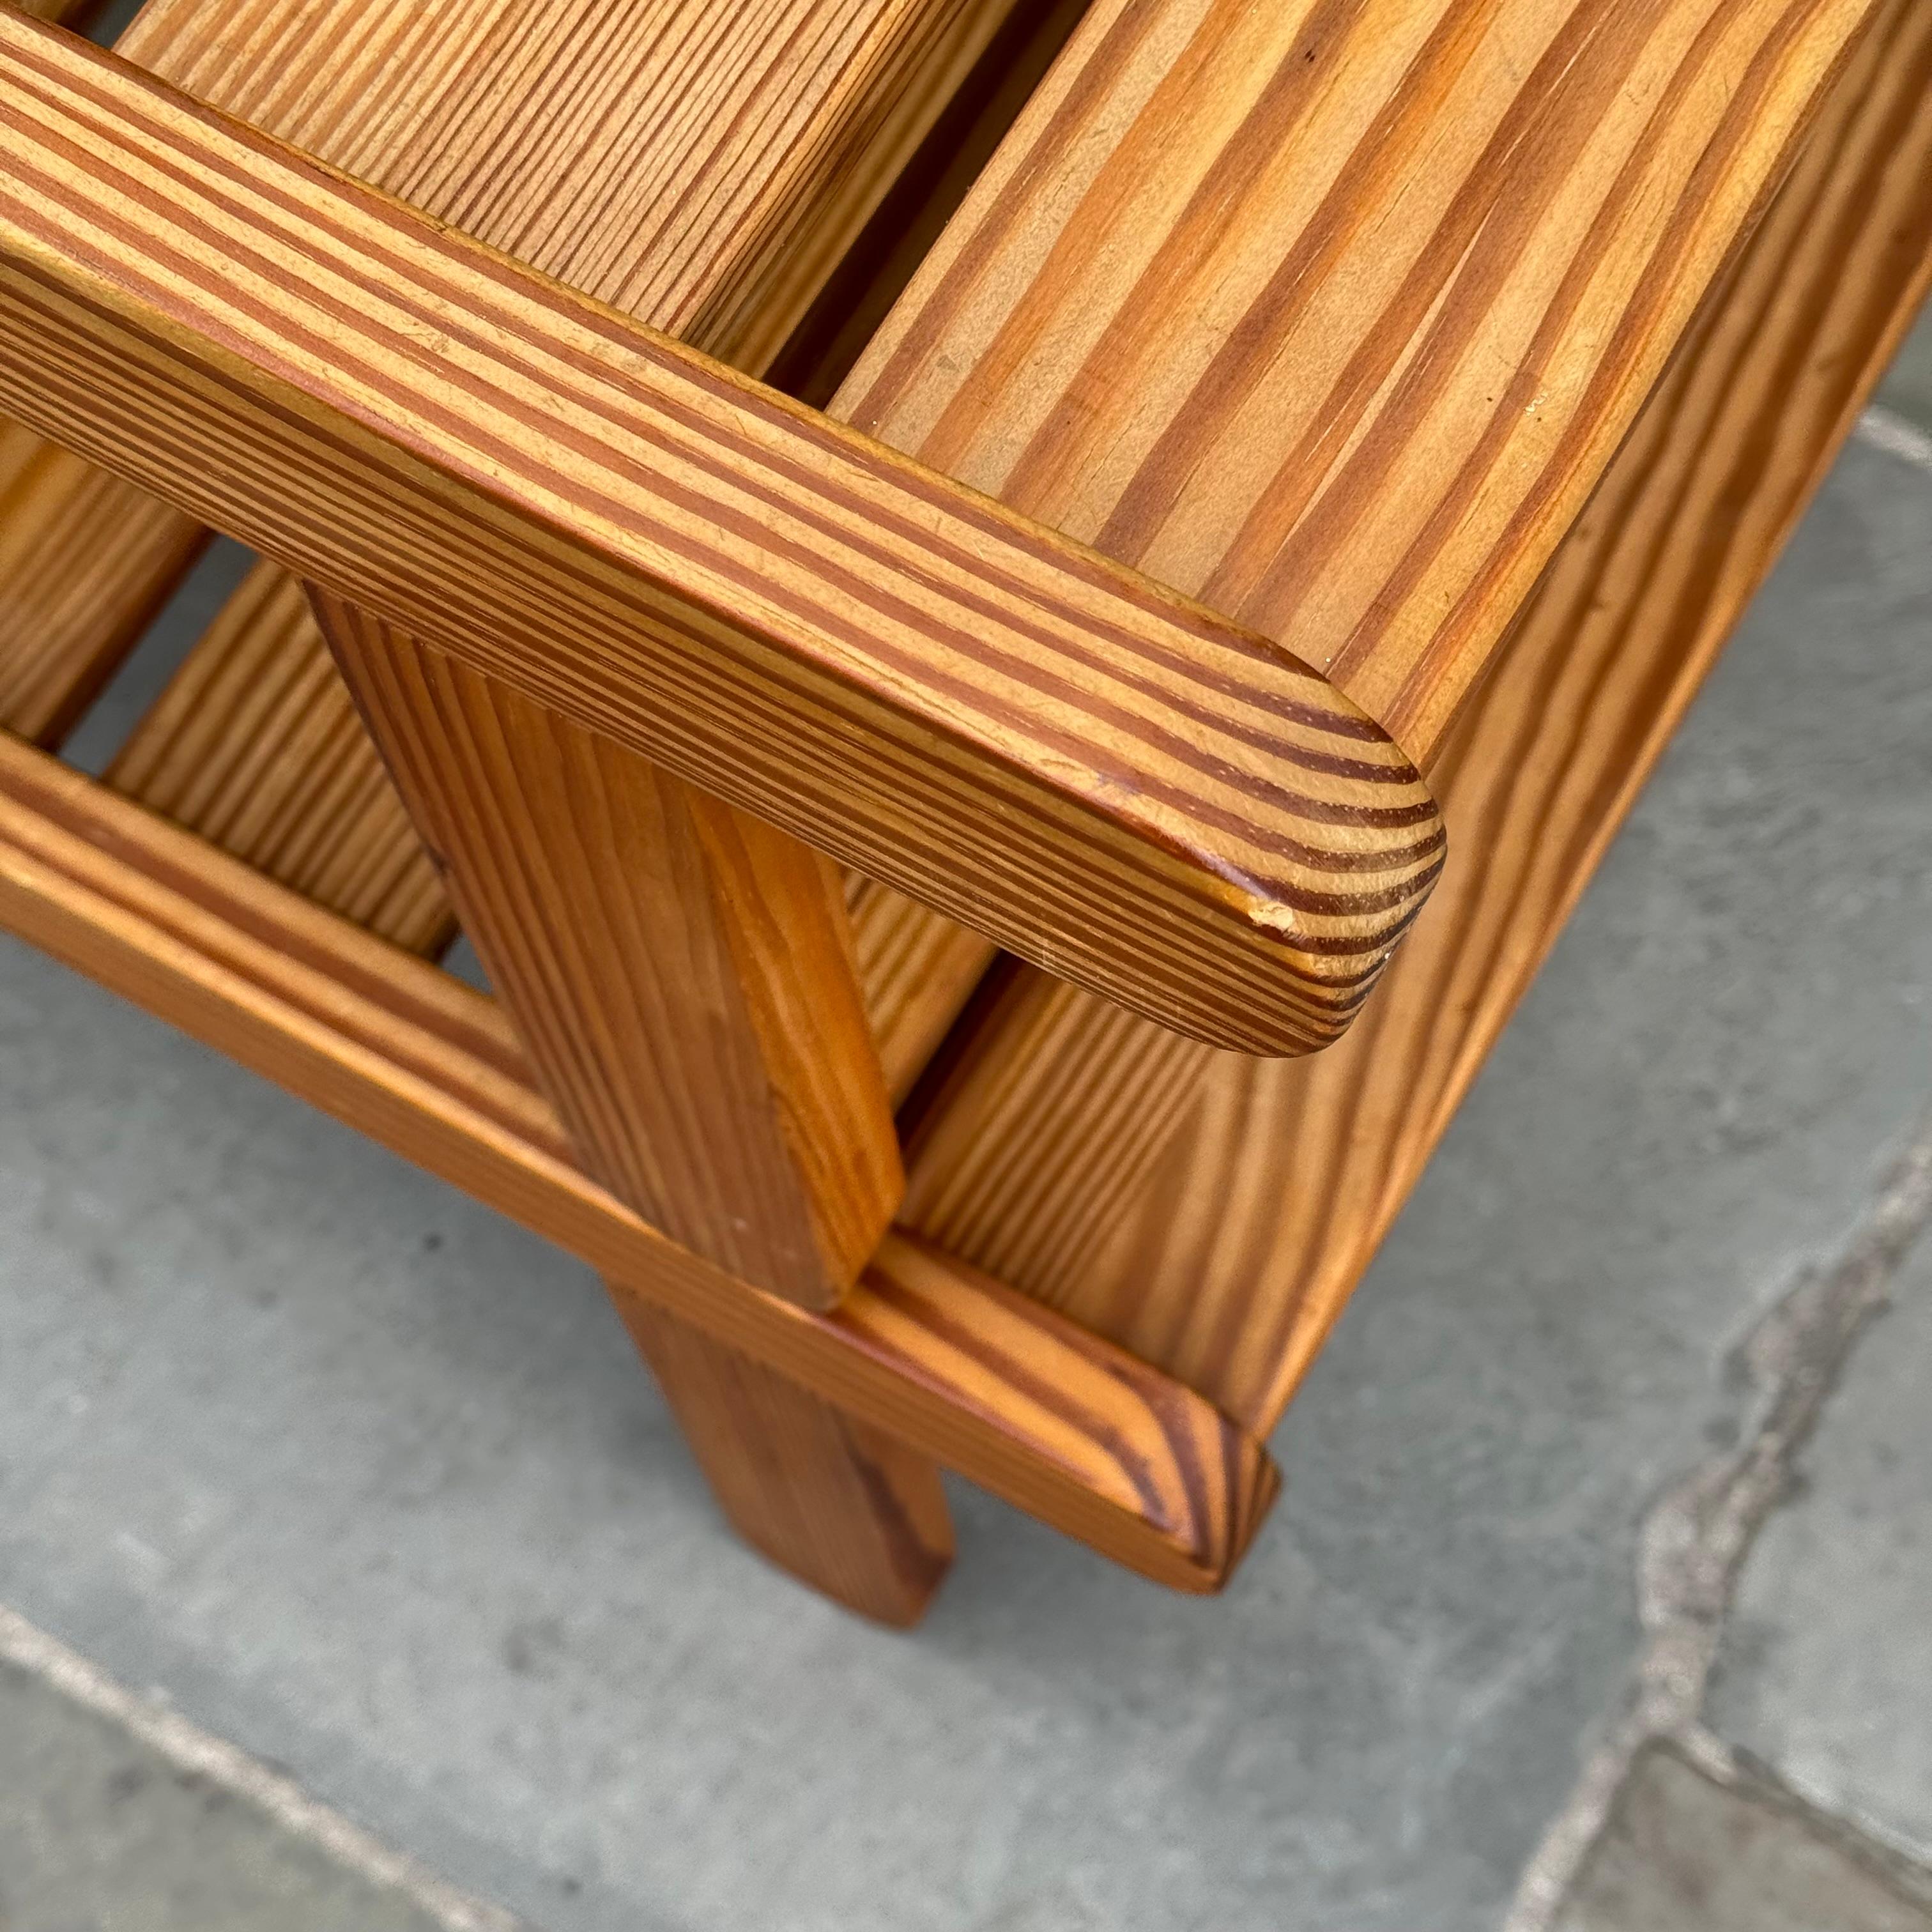 Paire de bancs en pin conçus par le designer danois Bernt Petersen dans les années 1960. 

Suffisamment basse pour être utilisée comme table basse ou comme siège d'appoint, la construction simple de cette paire de bancs est mise en valeur par les